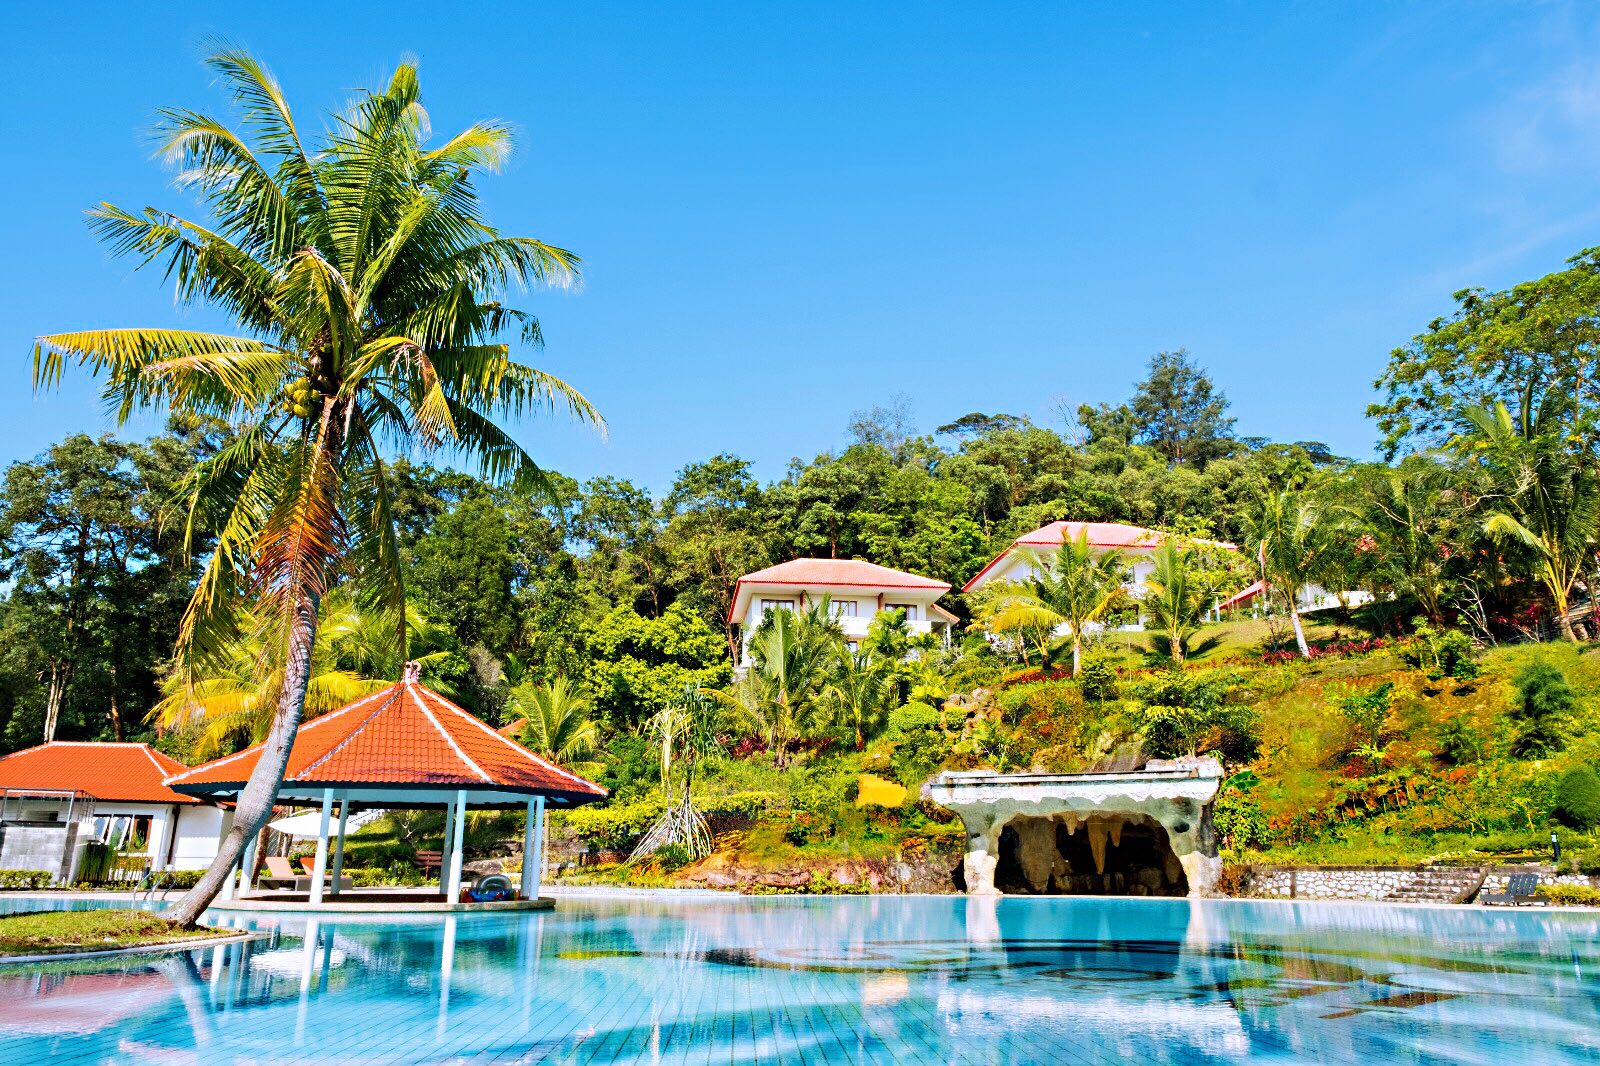 Pool at Sijori Resort